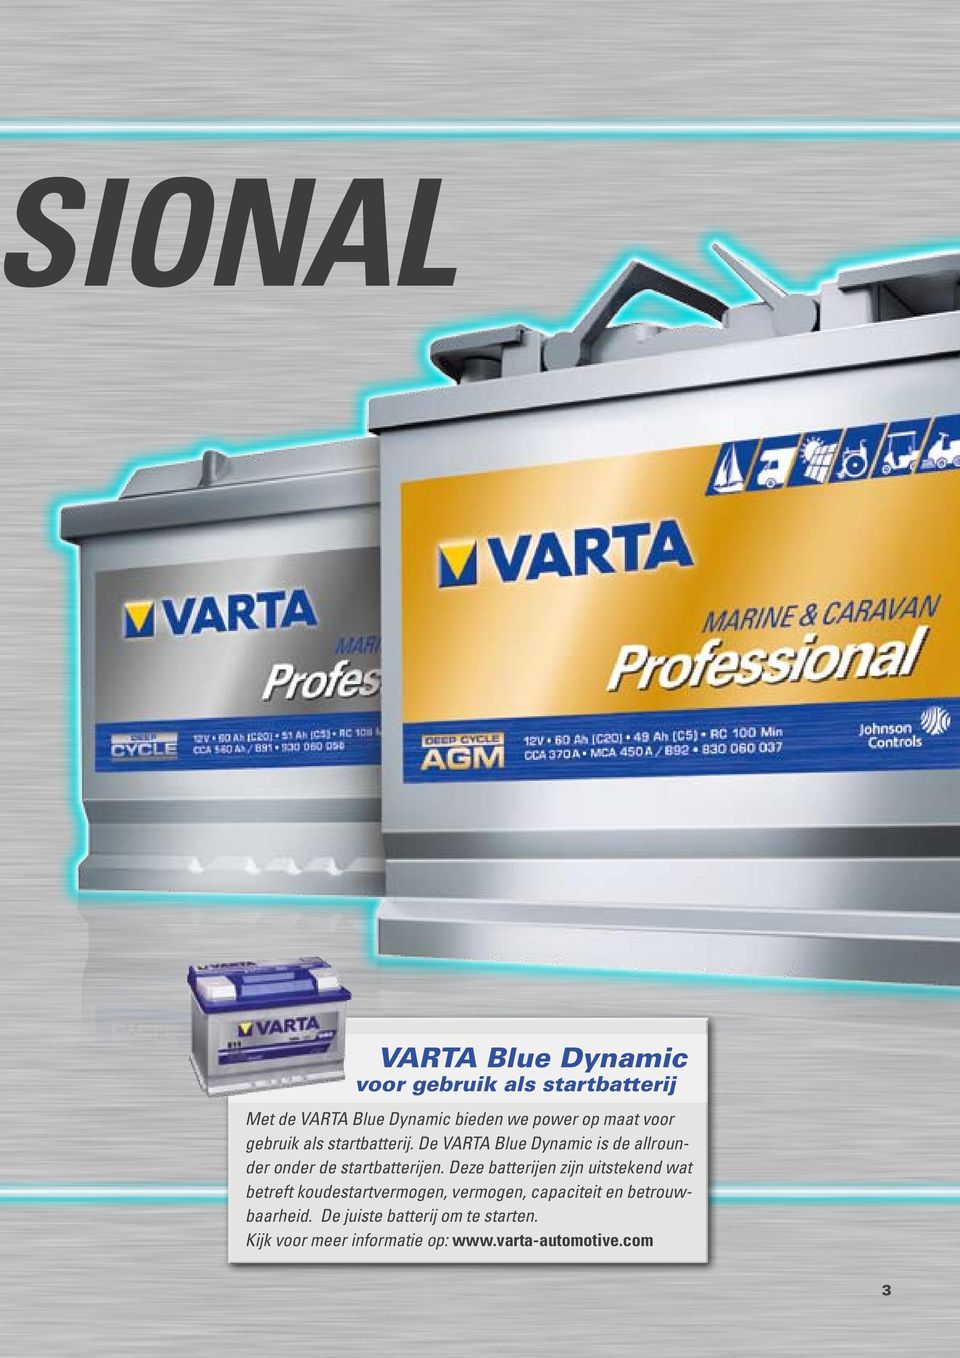 De VARTA Blue Dynamic is de allrounder onder de startbatterijen.